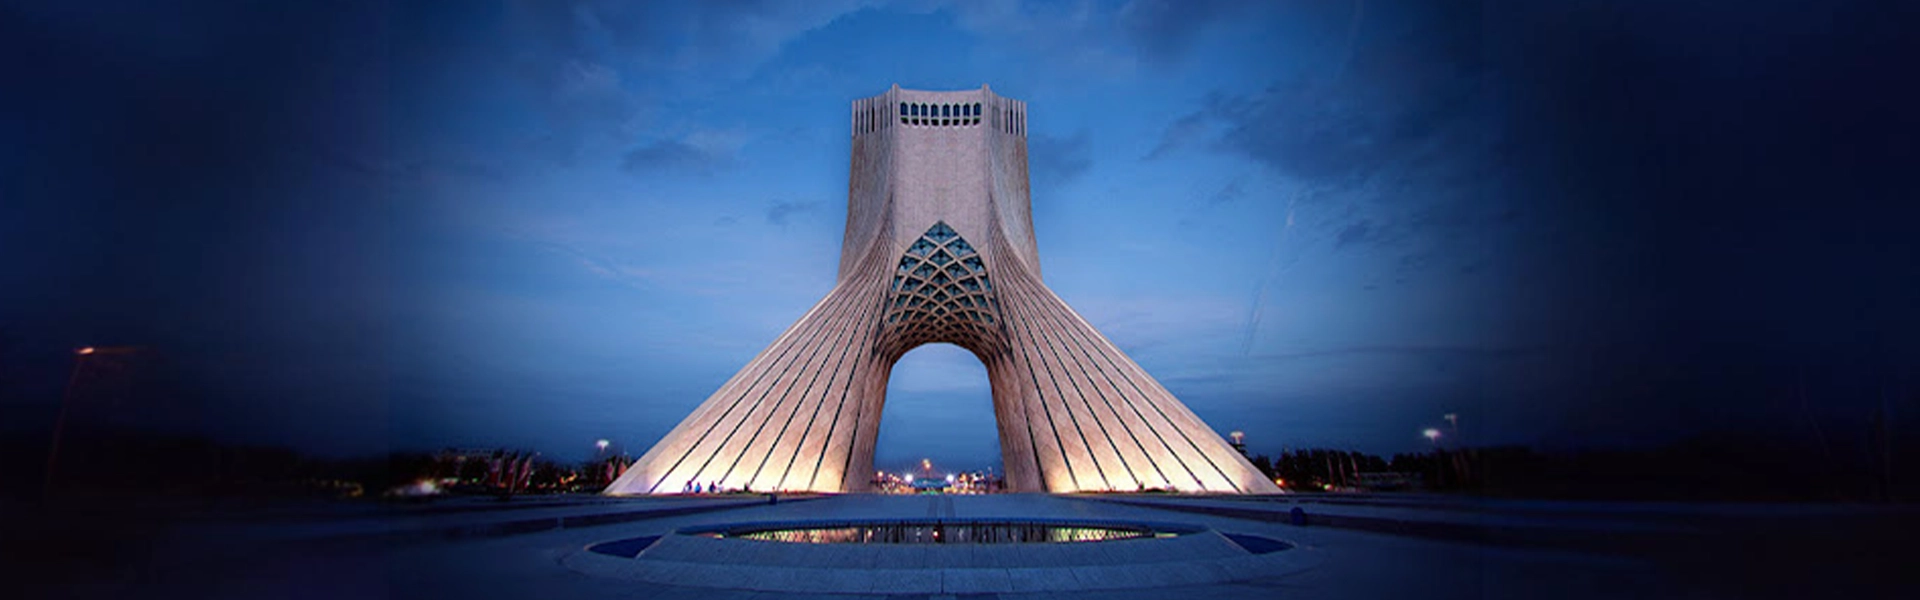 تاریخ و زمان برگزاری نمایشگاه های تهران Tehran exhibitions date